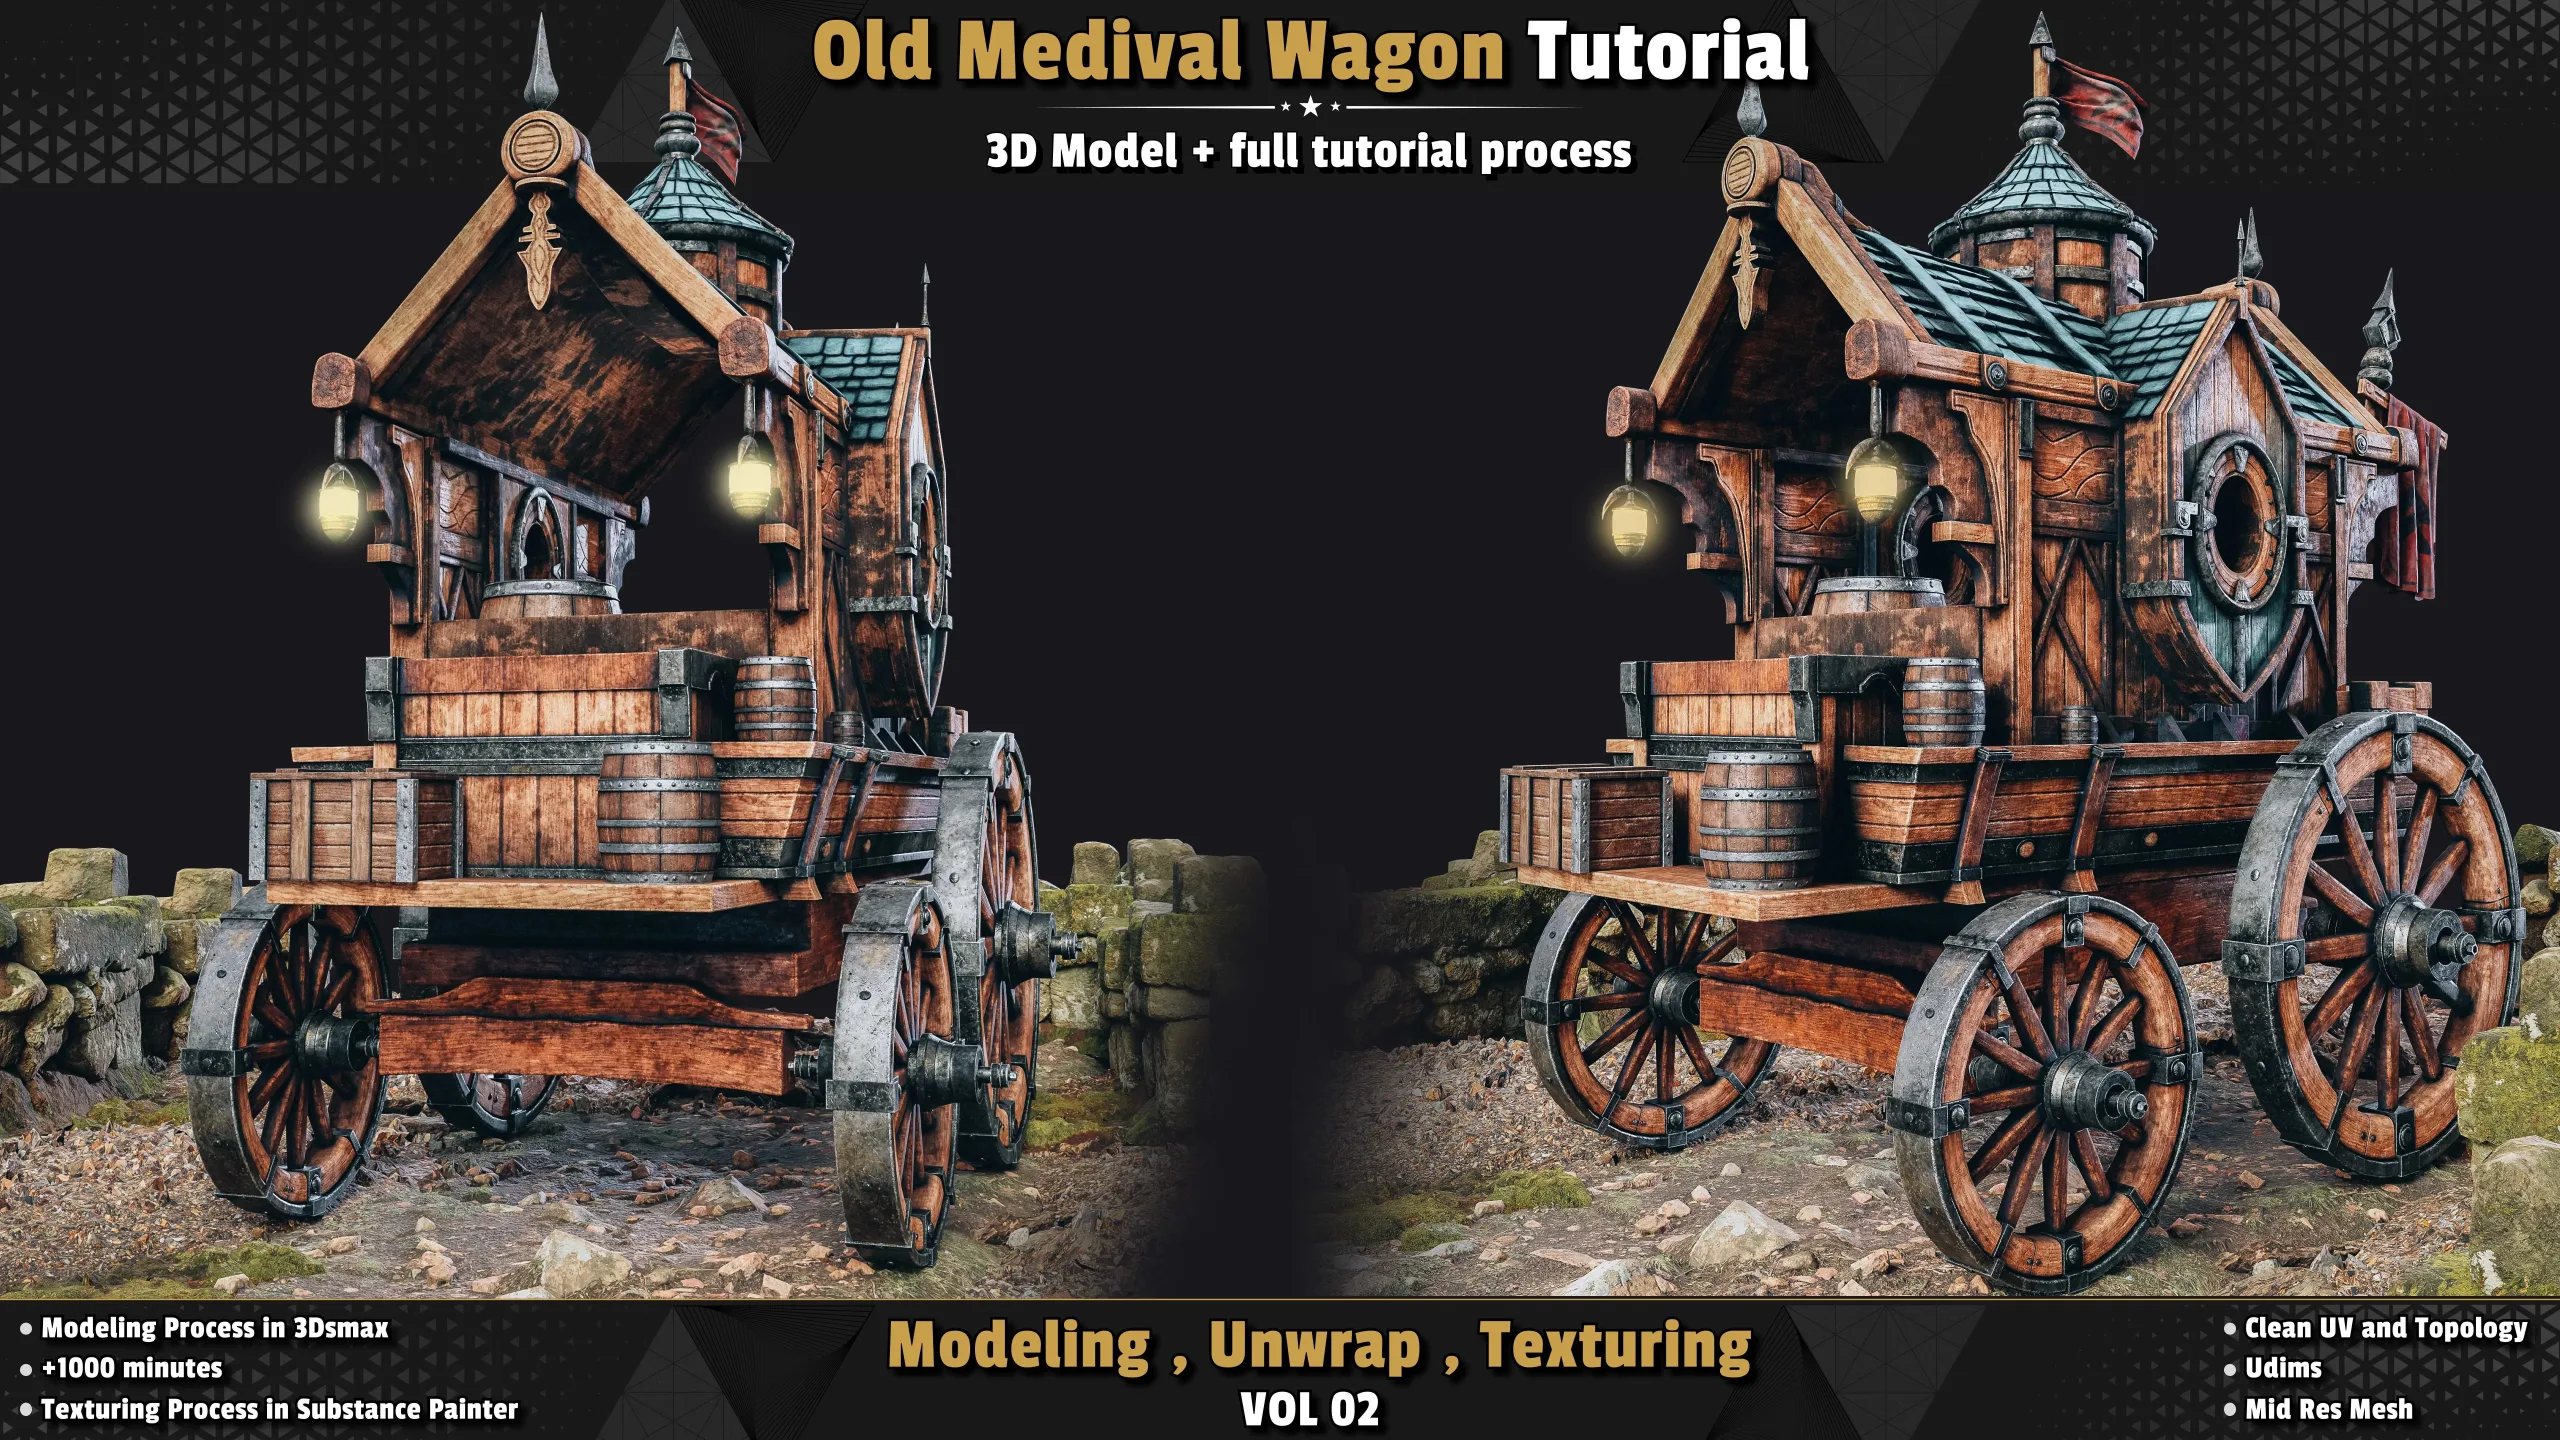 Old Medival Wagon / 3D Model + Full Tutorial Process